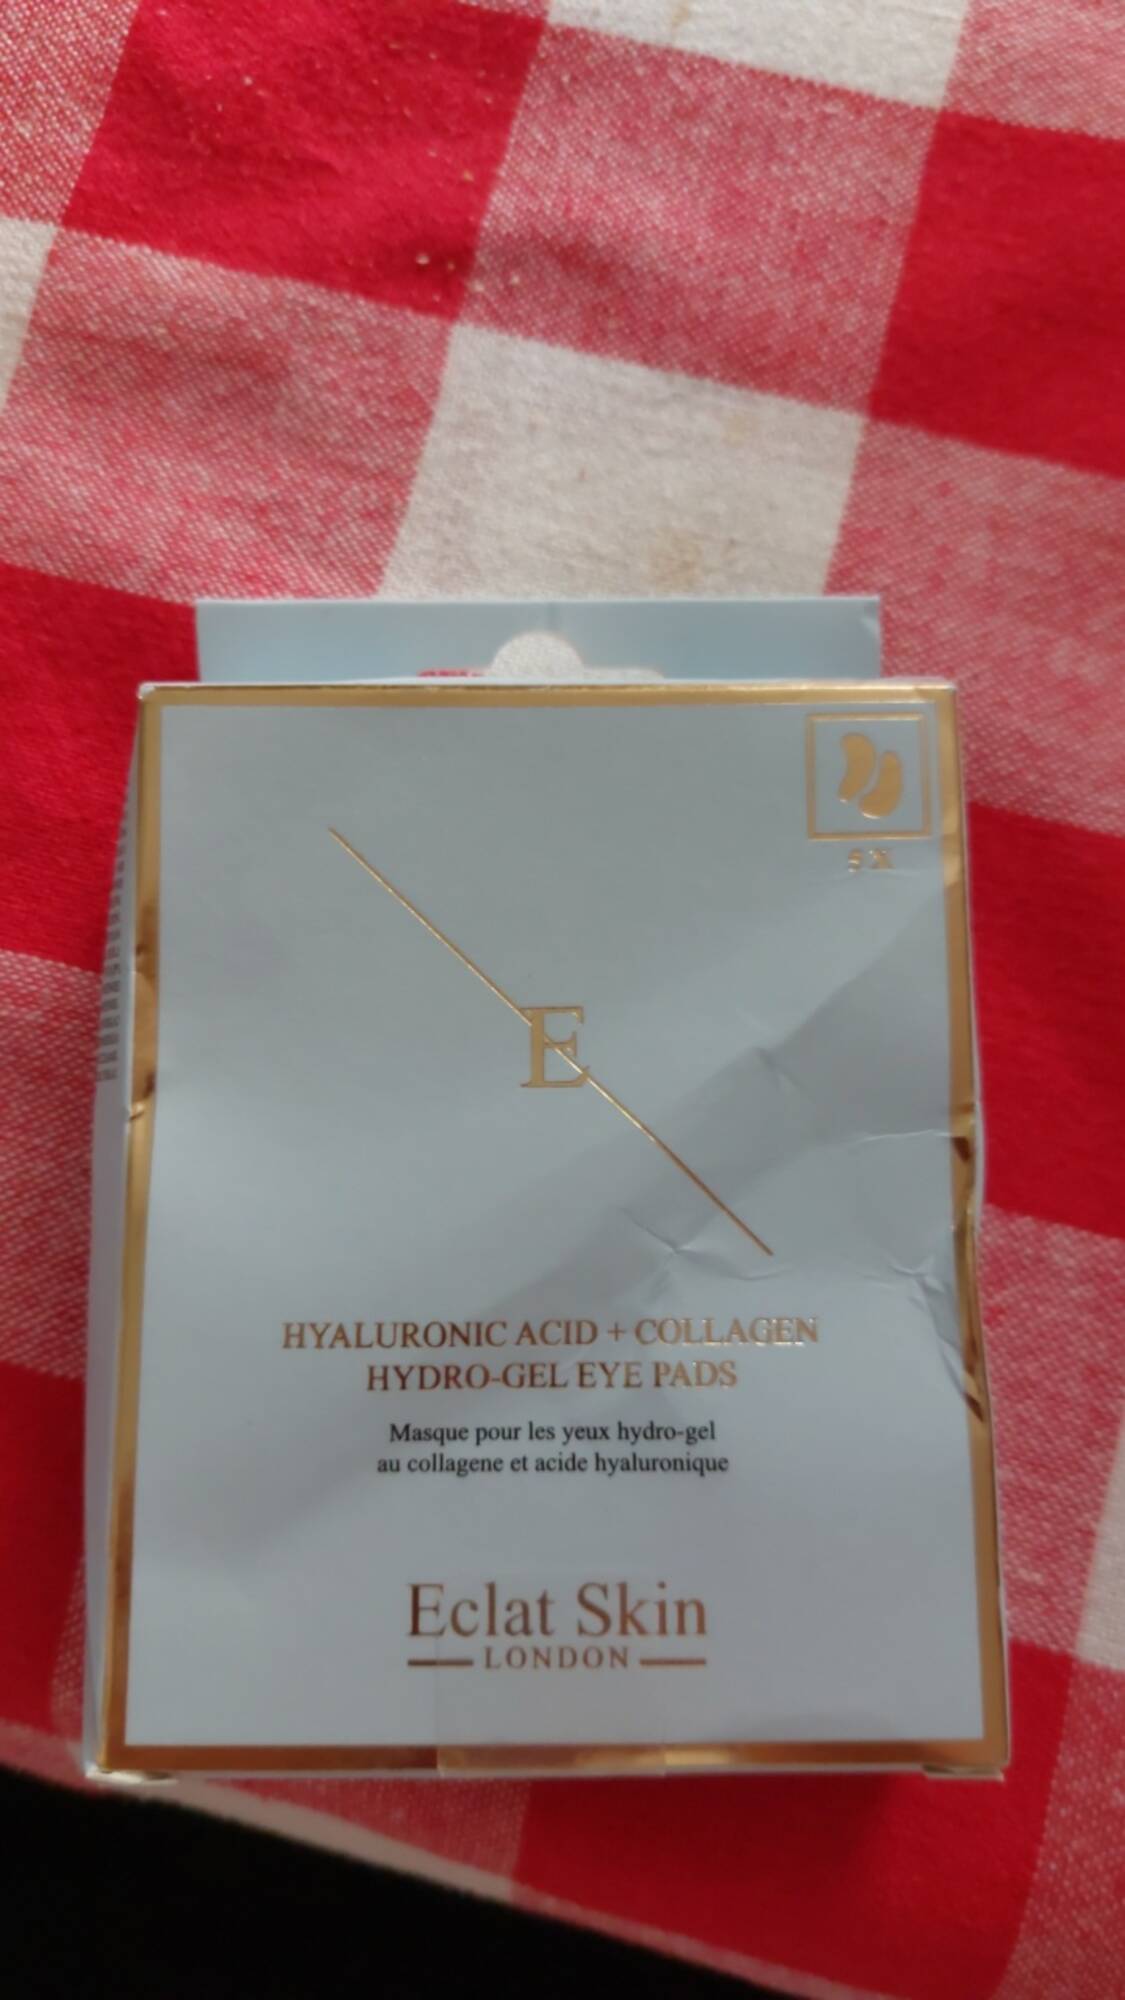 ECLAT SKIN - Masque pour les yeux hydro-gel au collagene et acide hyaluronique